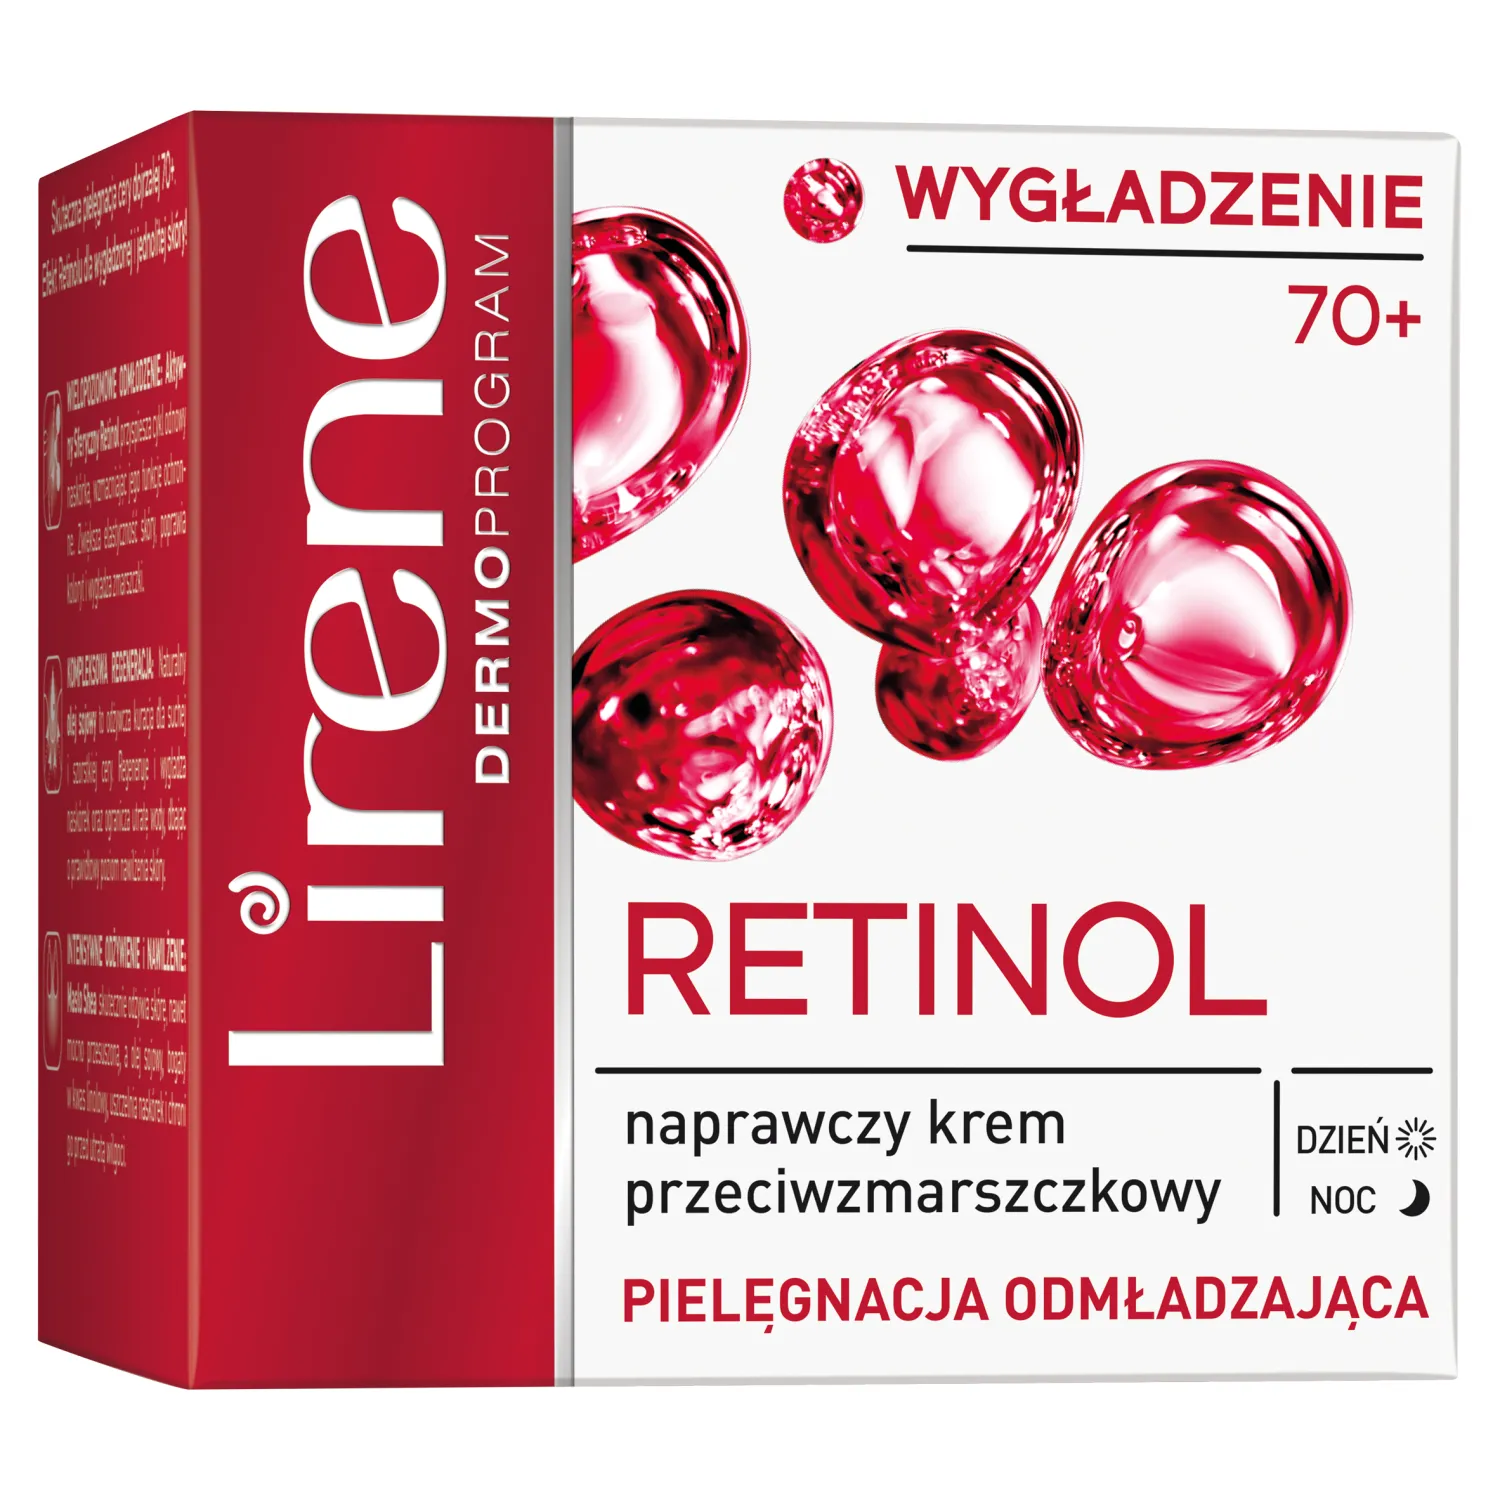 Lirene Wygładzenie 70+ naprawczy krem przeciwzmarszczkowy Retinol, 50 ml